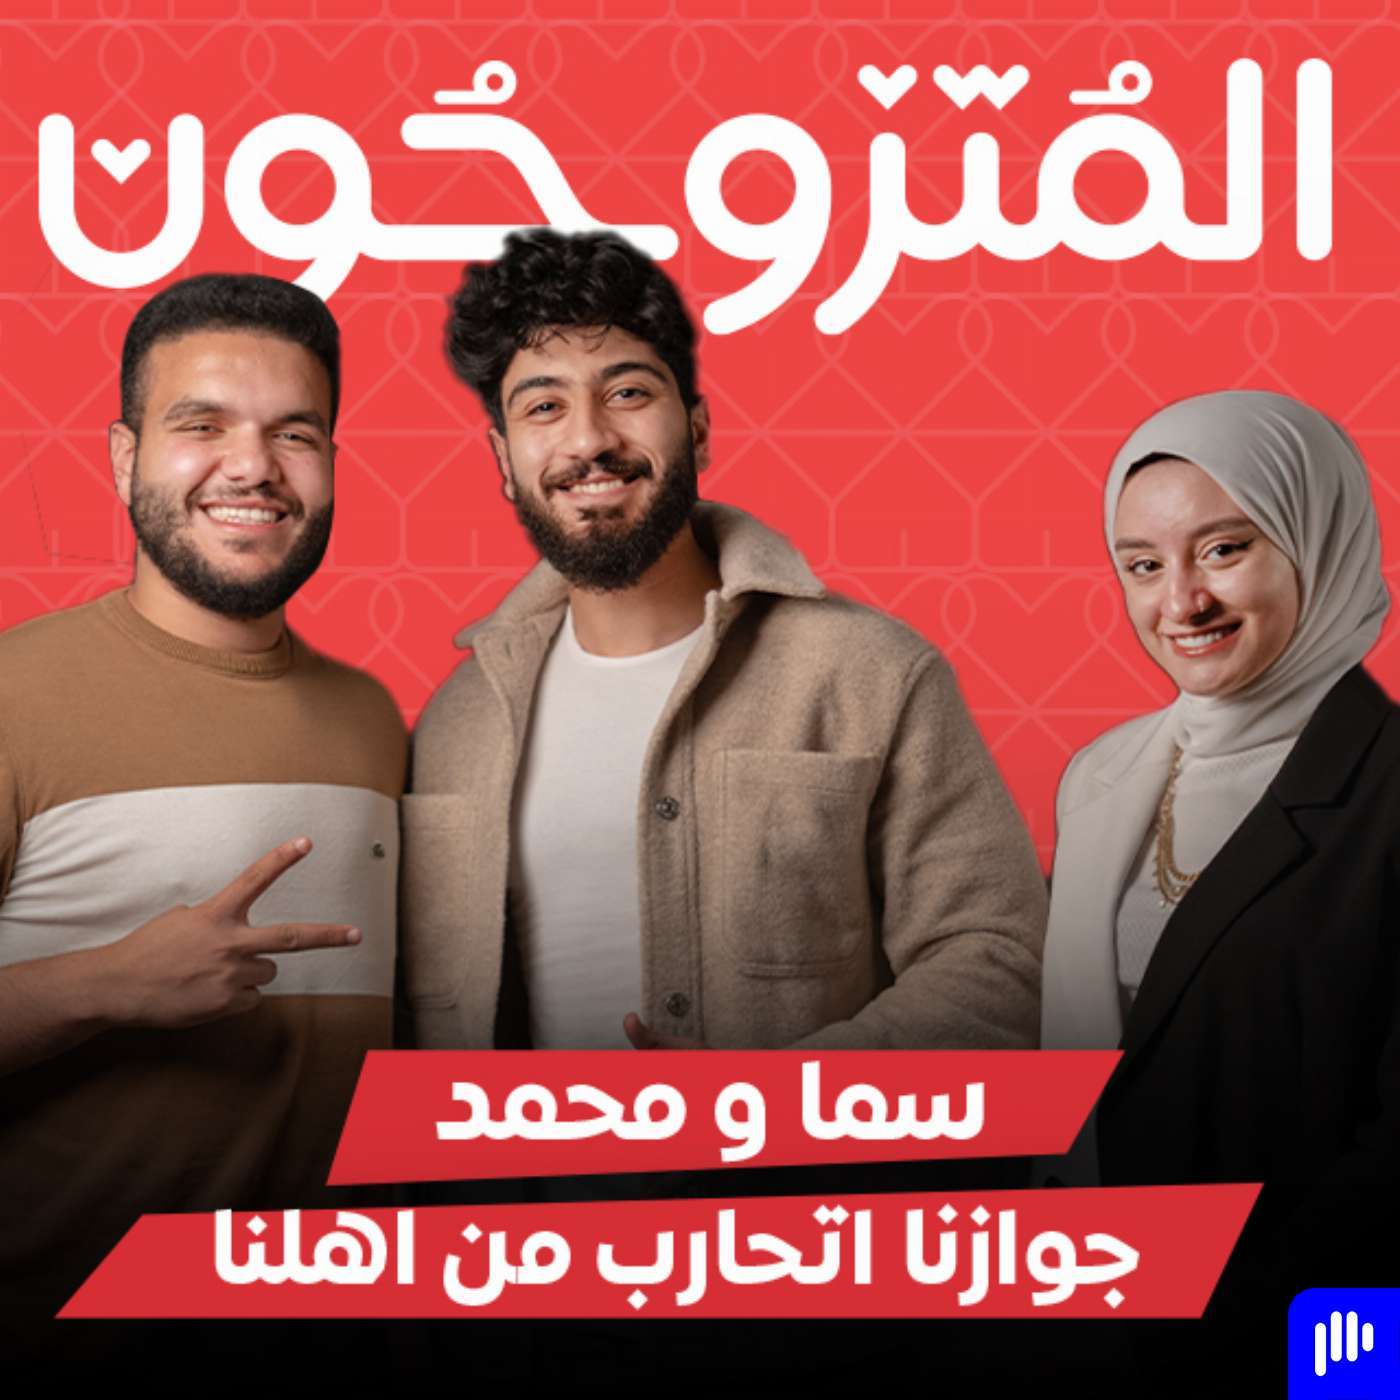 بودكاست المتزوجون الحلقة الثامنة l جوازنا اتحارب من اهلنا  - كوتش سما و محمد